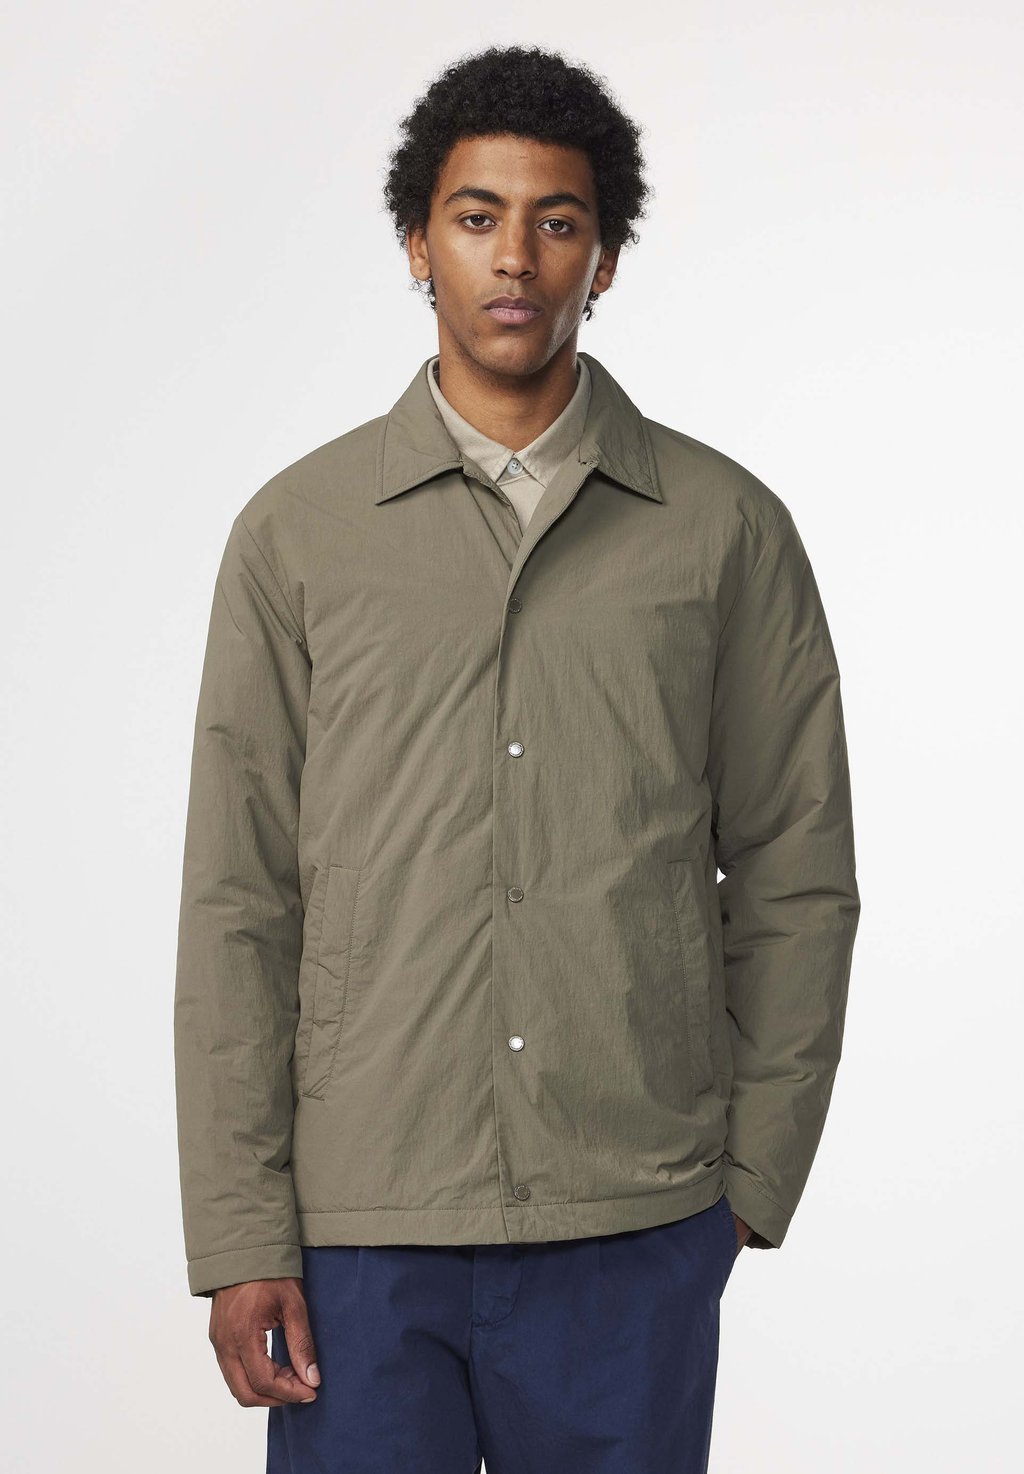 Демисезонная куртка NN07 MATTEO 8280 NN.07, цвет capers цена и фото